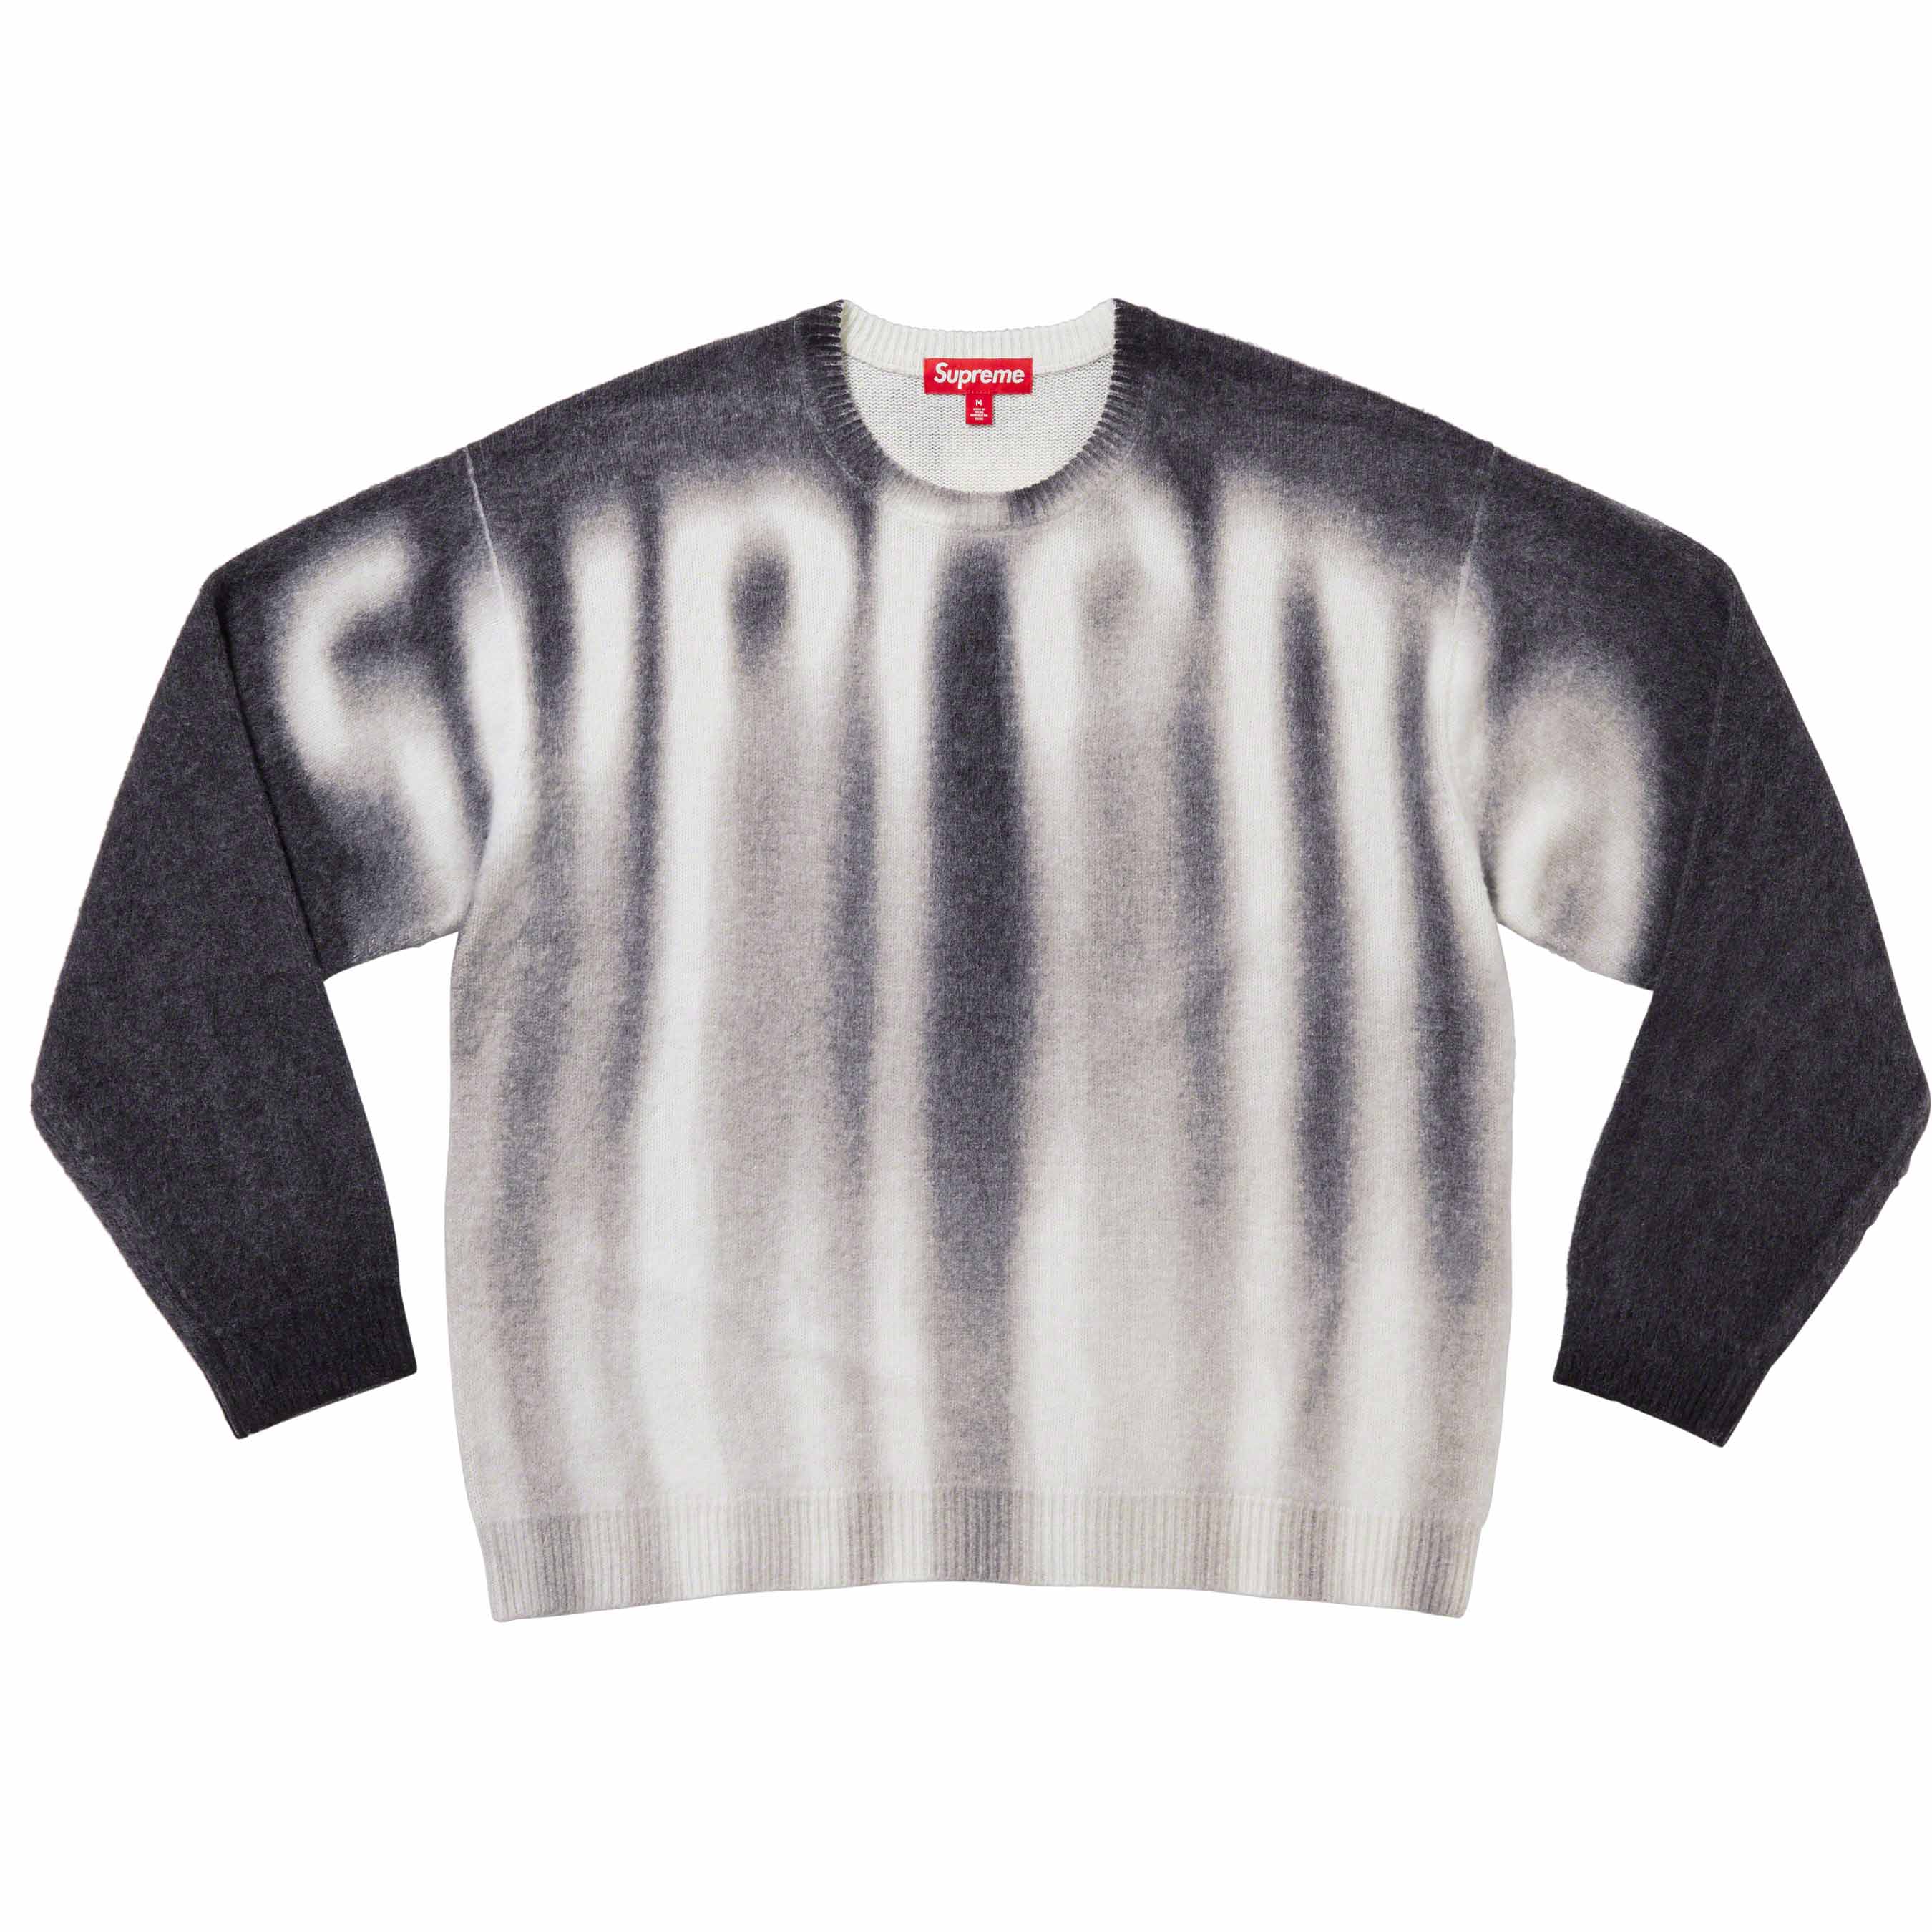 ニット/セーターsupreme sweater XL